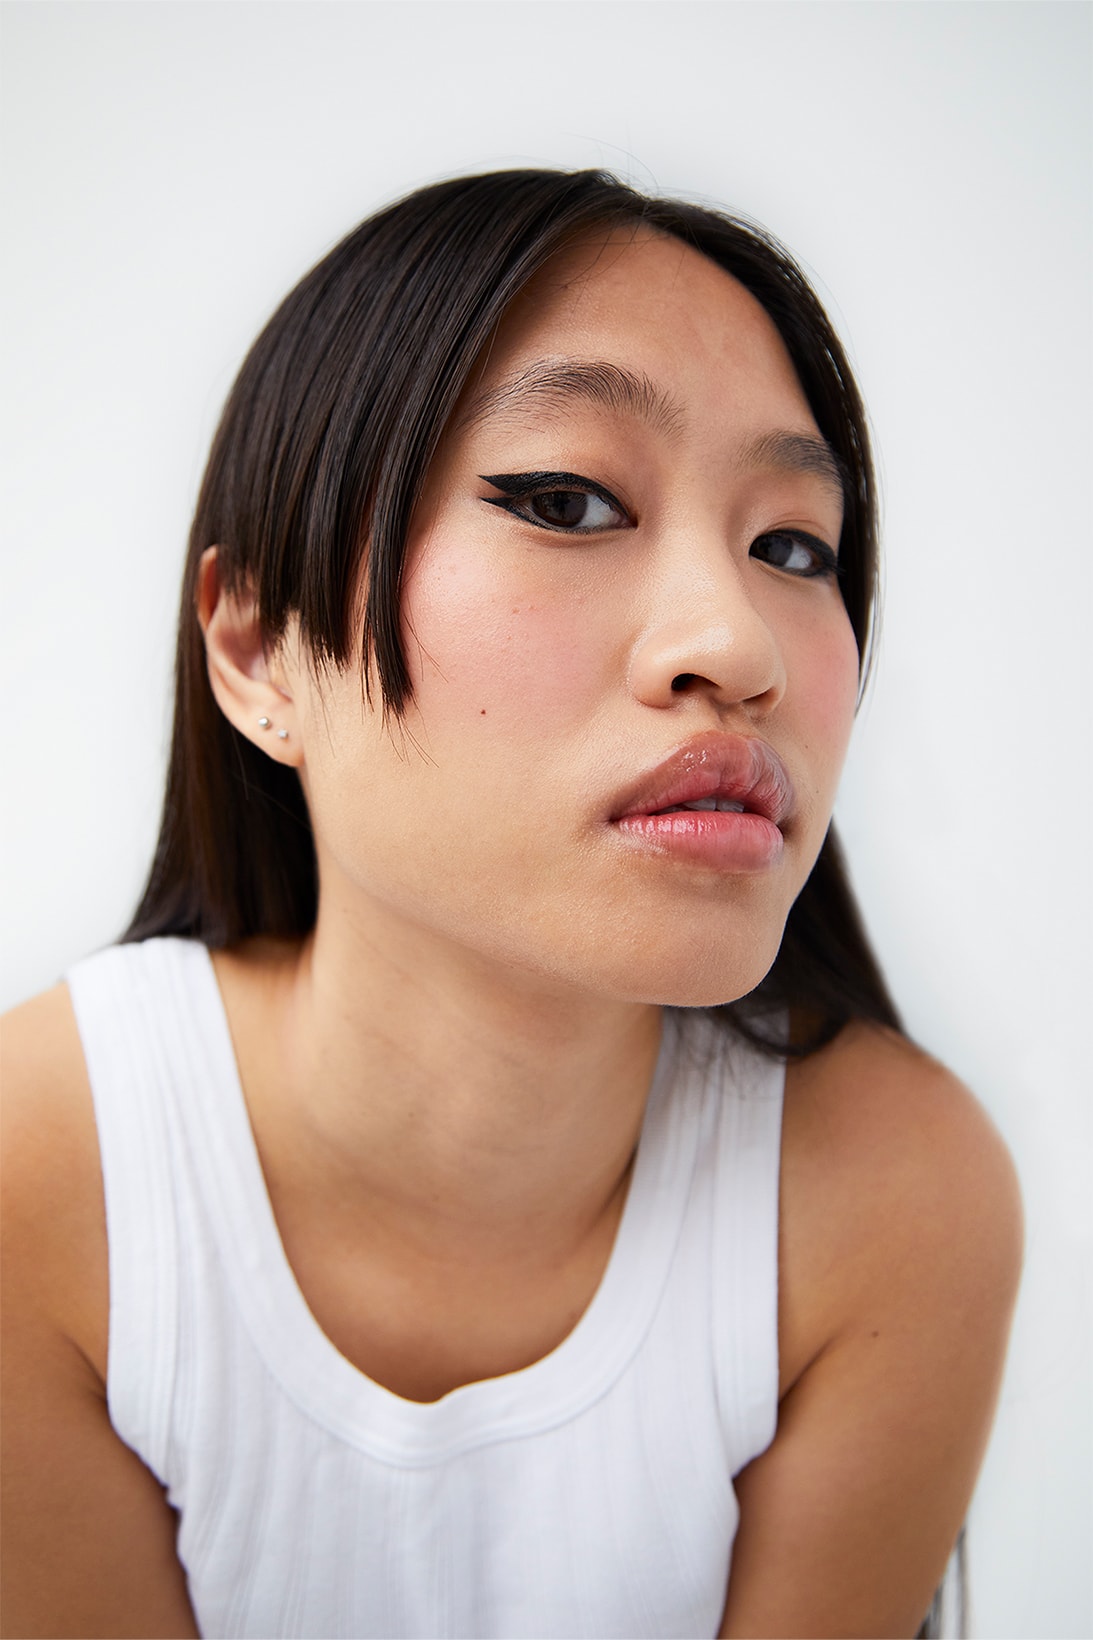 espressoh hi_liner makeup campaign images asian model